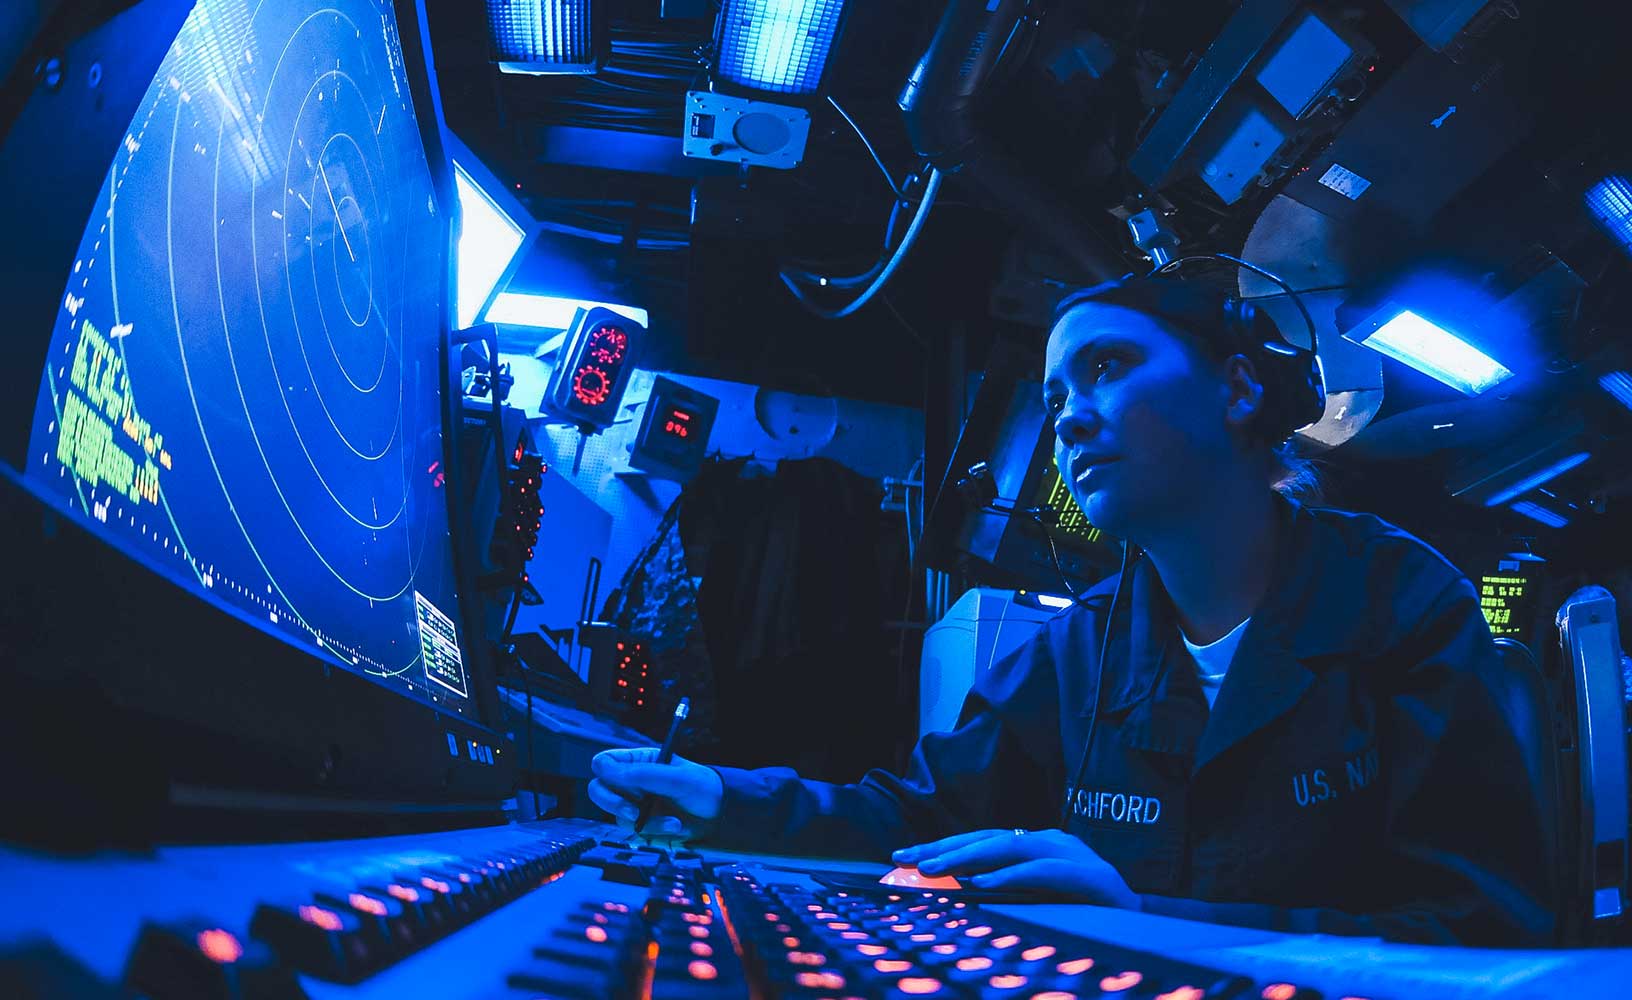 La technicienne radar de la marine américaine surveille ses écrans et prend des notes